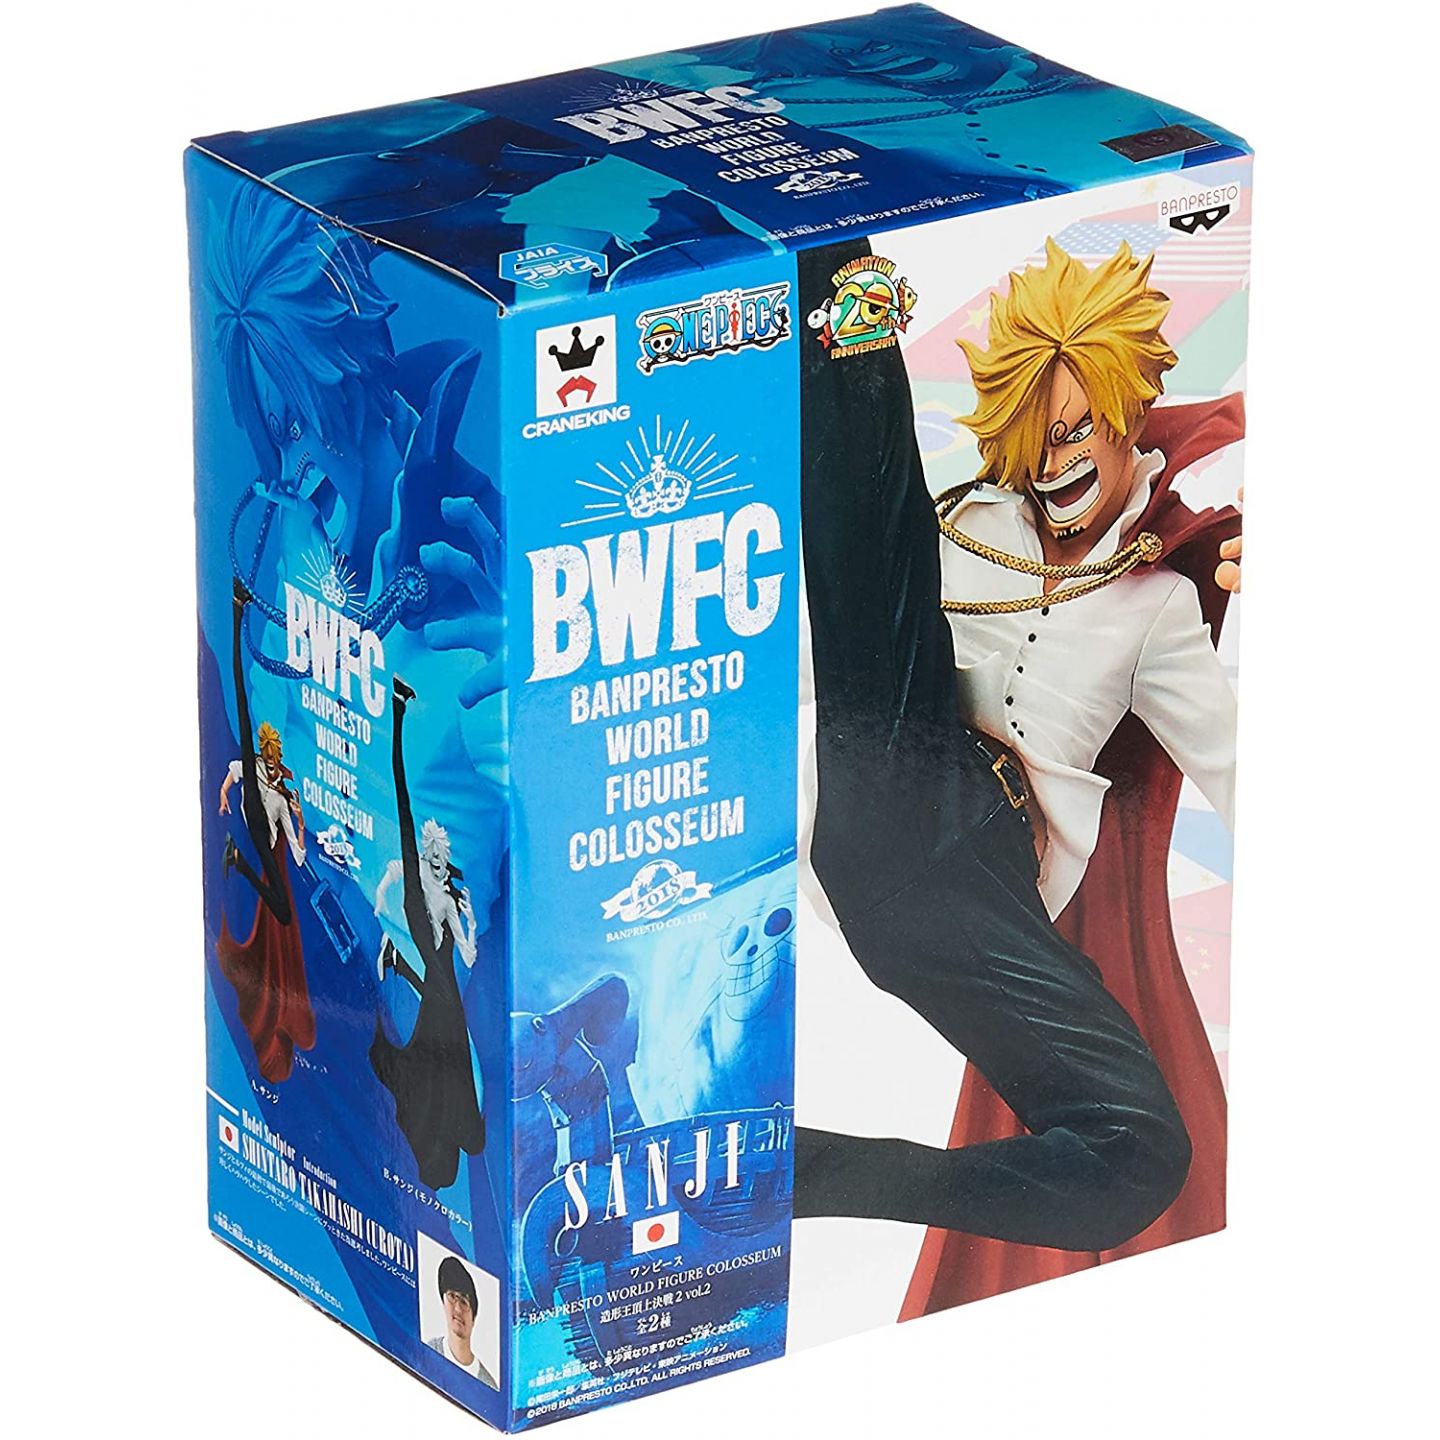 BANPRESTO BWFC - One Piece WORLD FIGURE COLOSSEUM vol.2 - Sanji